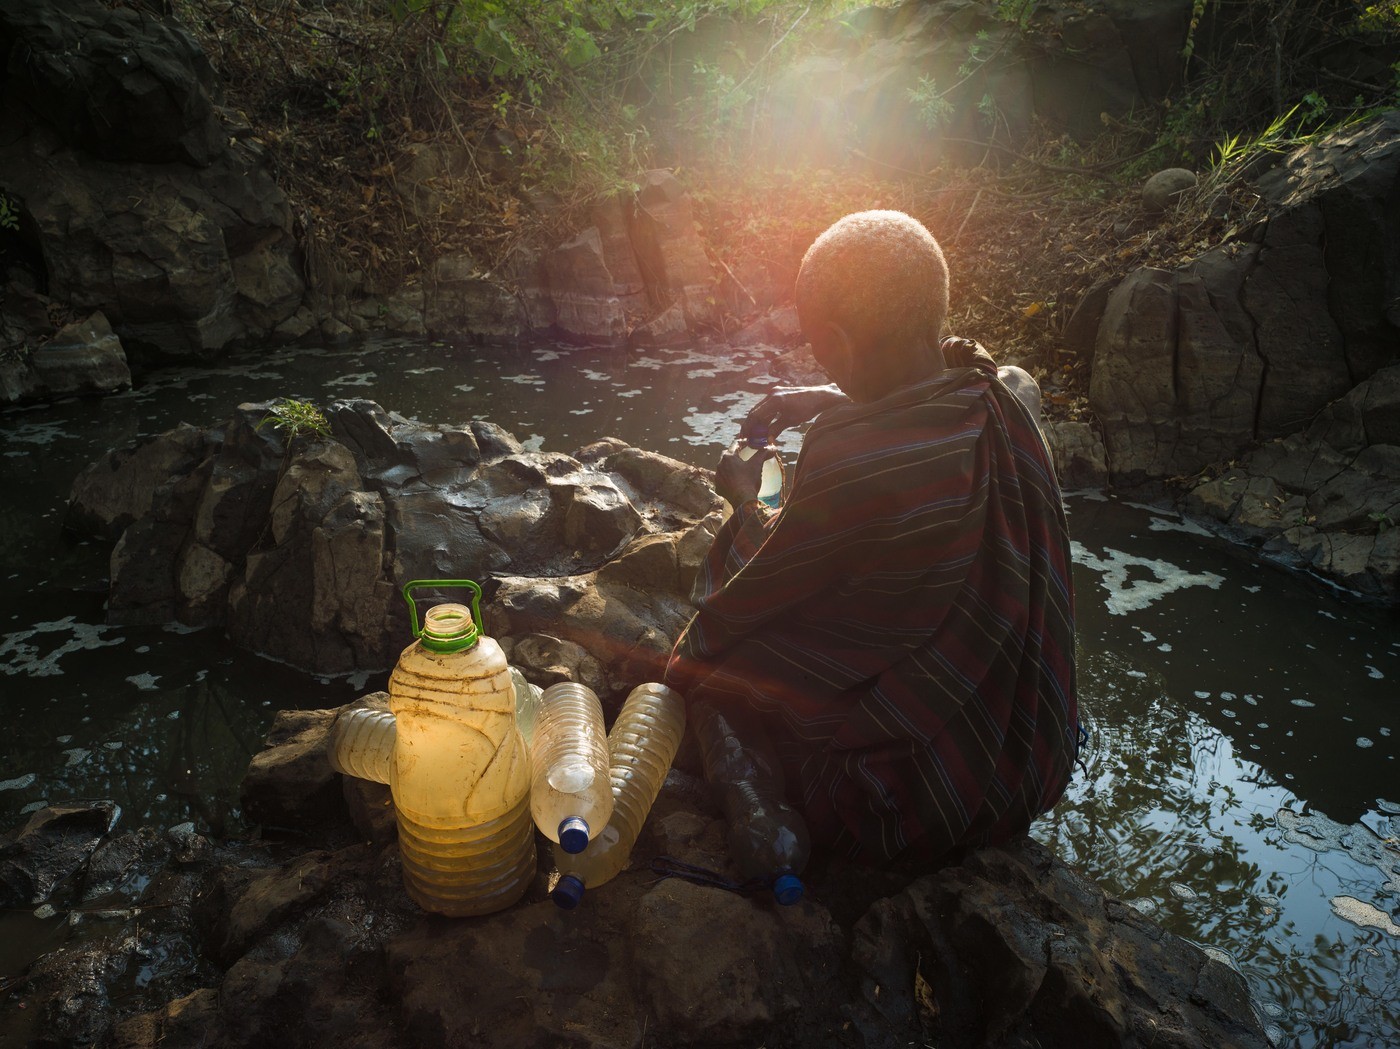 Fotógrafo retrata falta d'água no Brasil e no mundo em imagens impactantes (Foto: Érico Hiller)